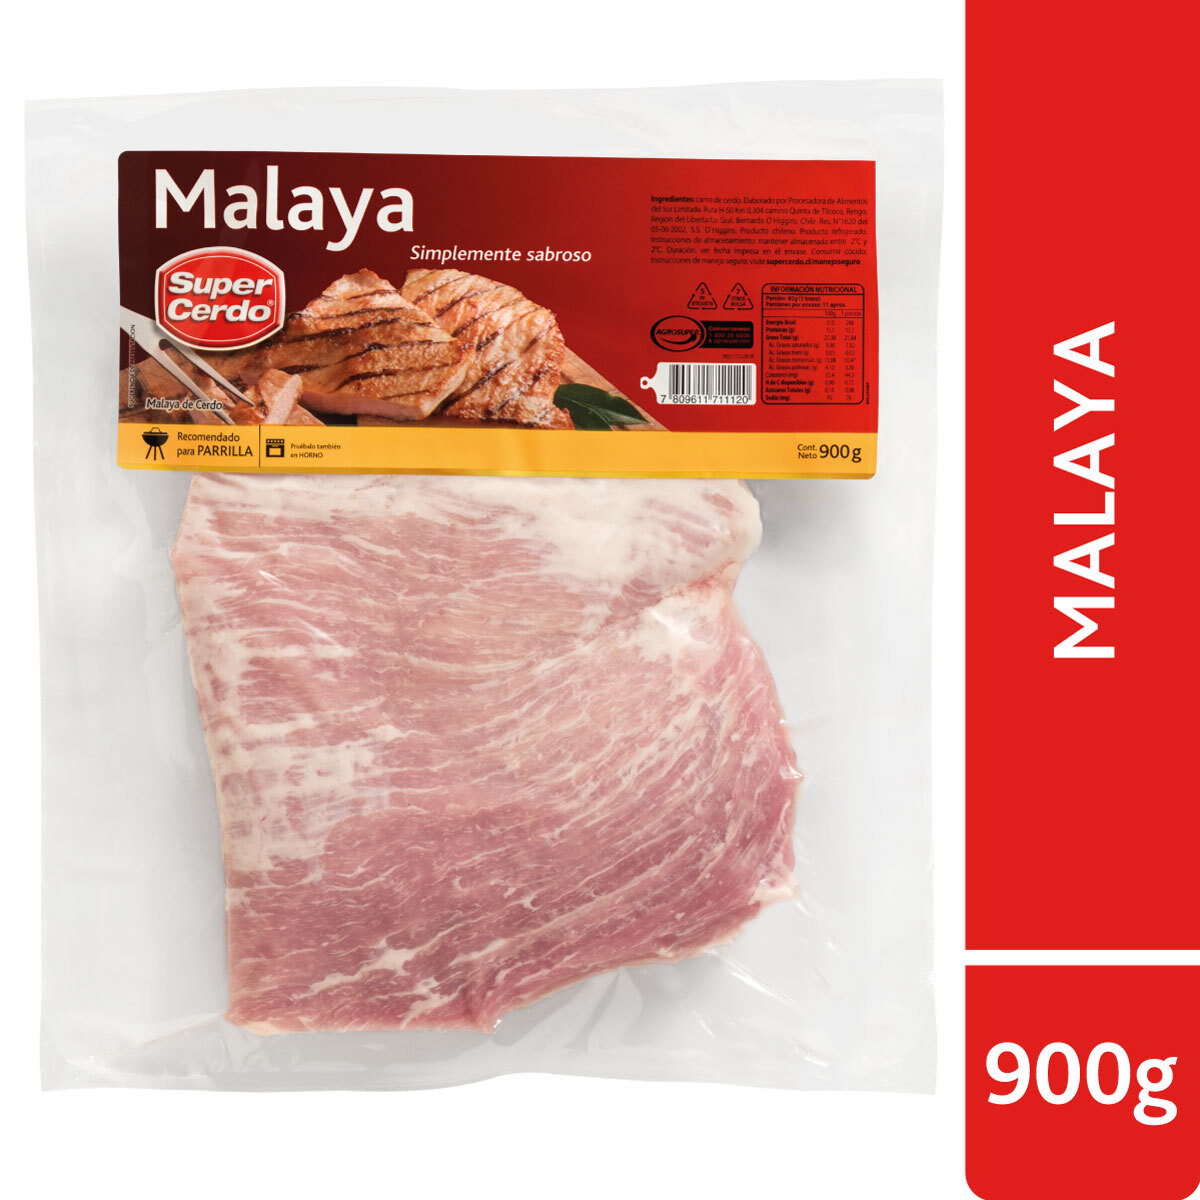 Malaya de Cerdo